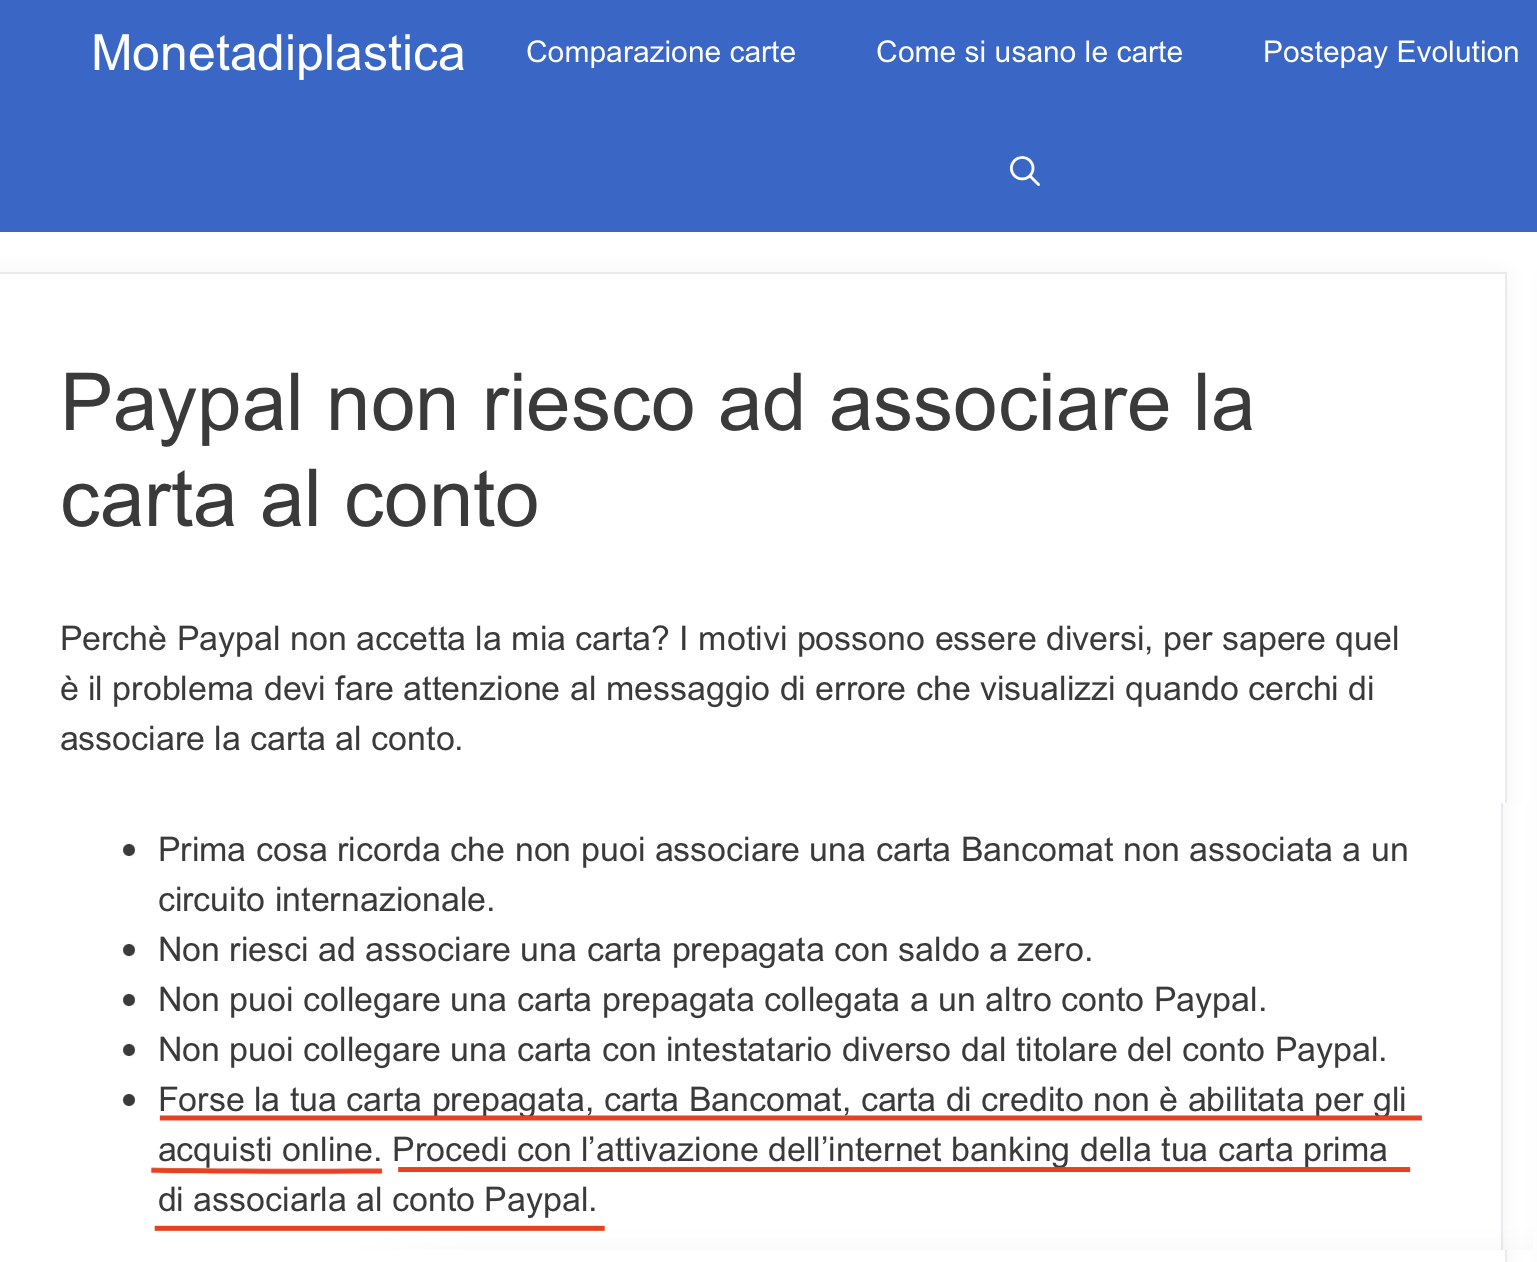 イタリア郵便局ネット購入手数料40セント回避成功 でも７月から口座維持費 月４€から６€に_f0234936_22285336.png